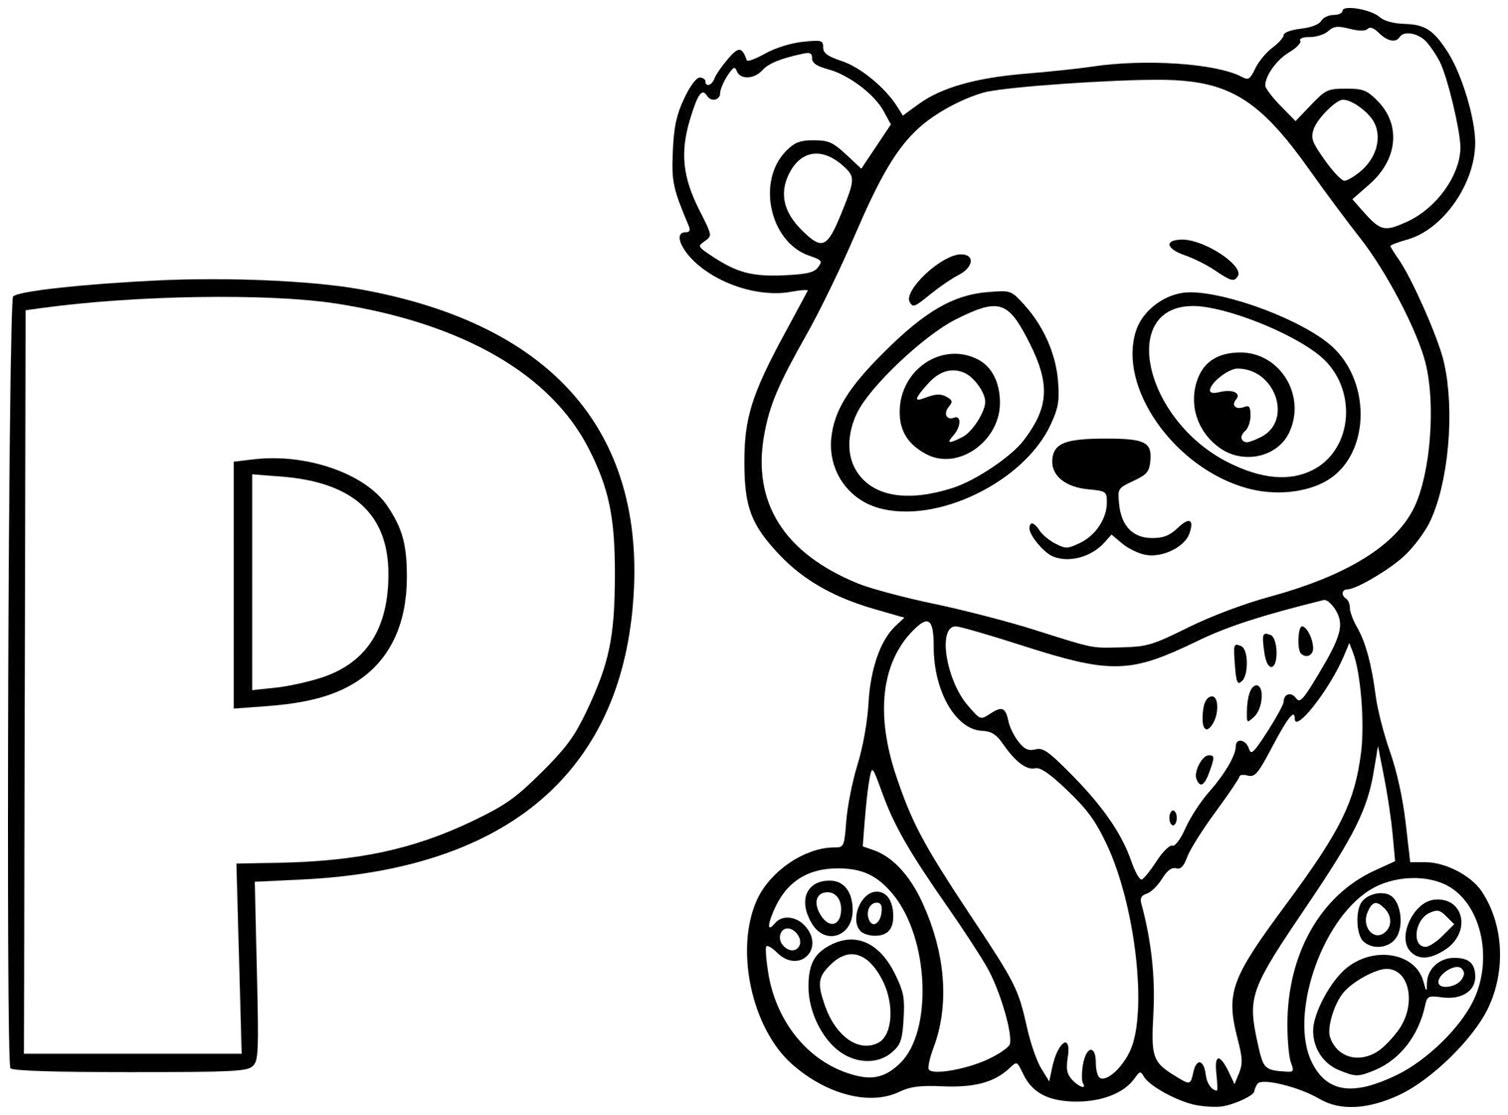 Panda páginas para colorir para crianças - Pandas - Just Color